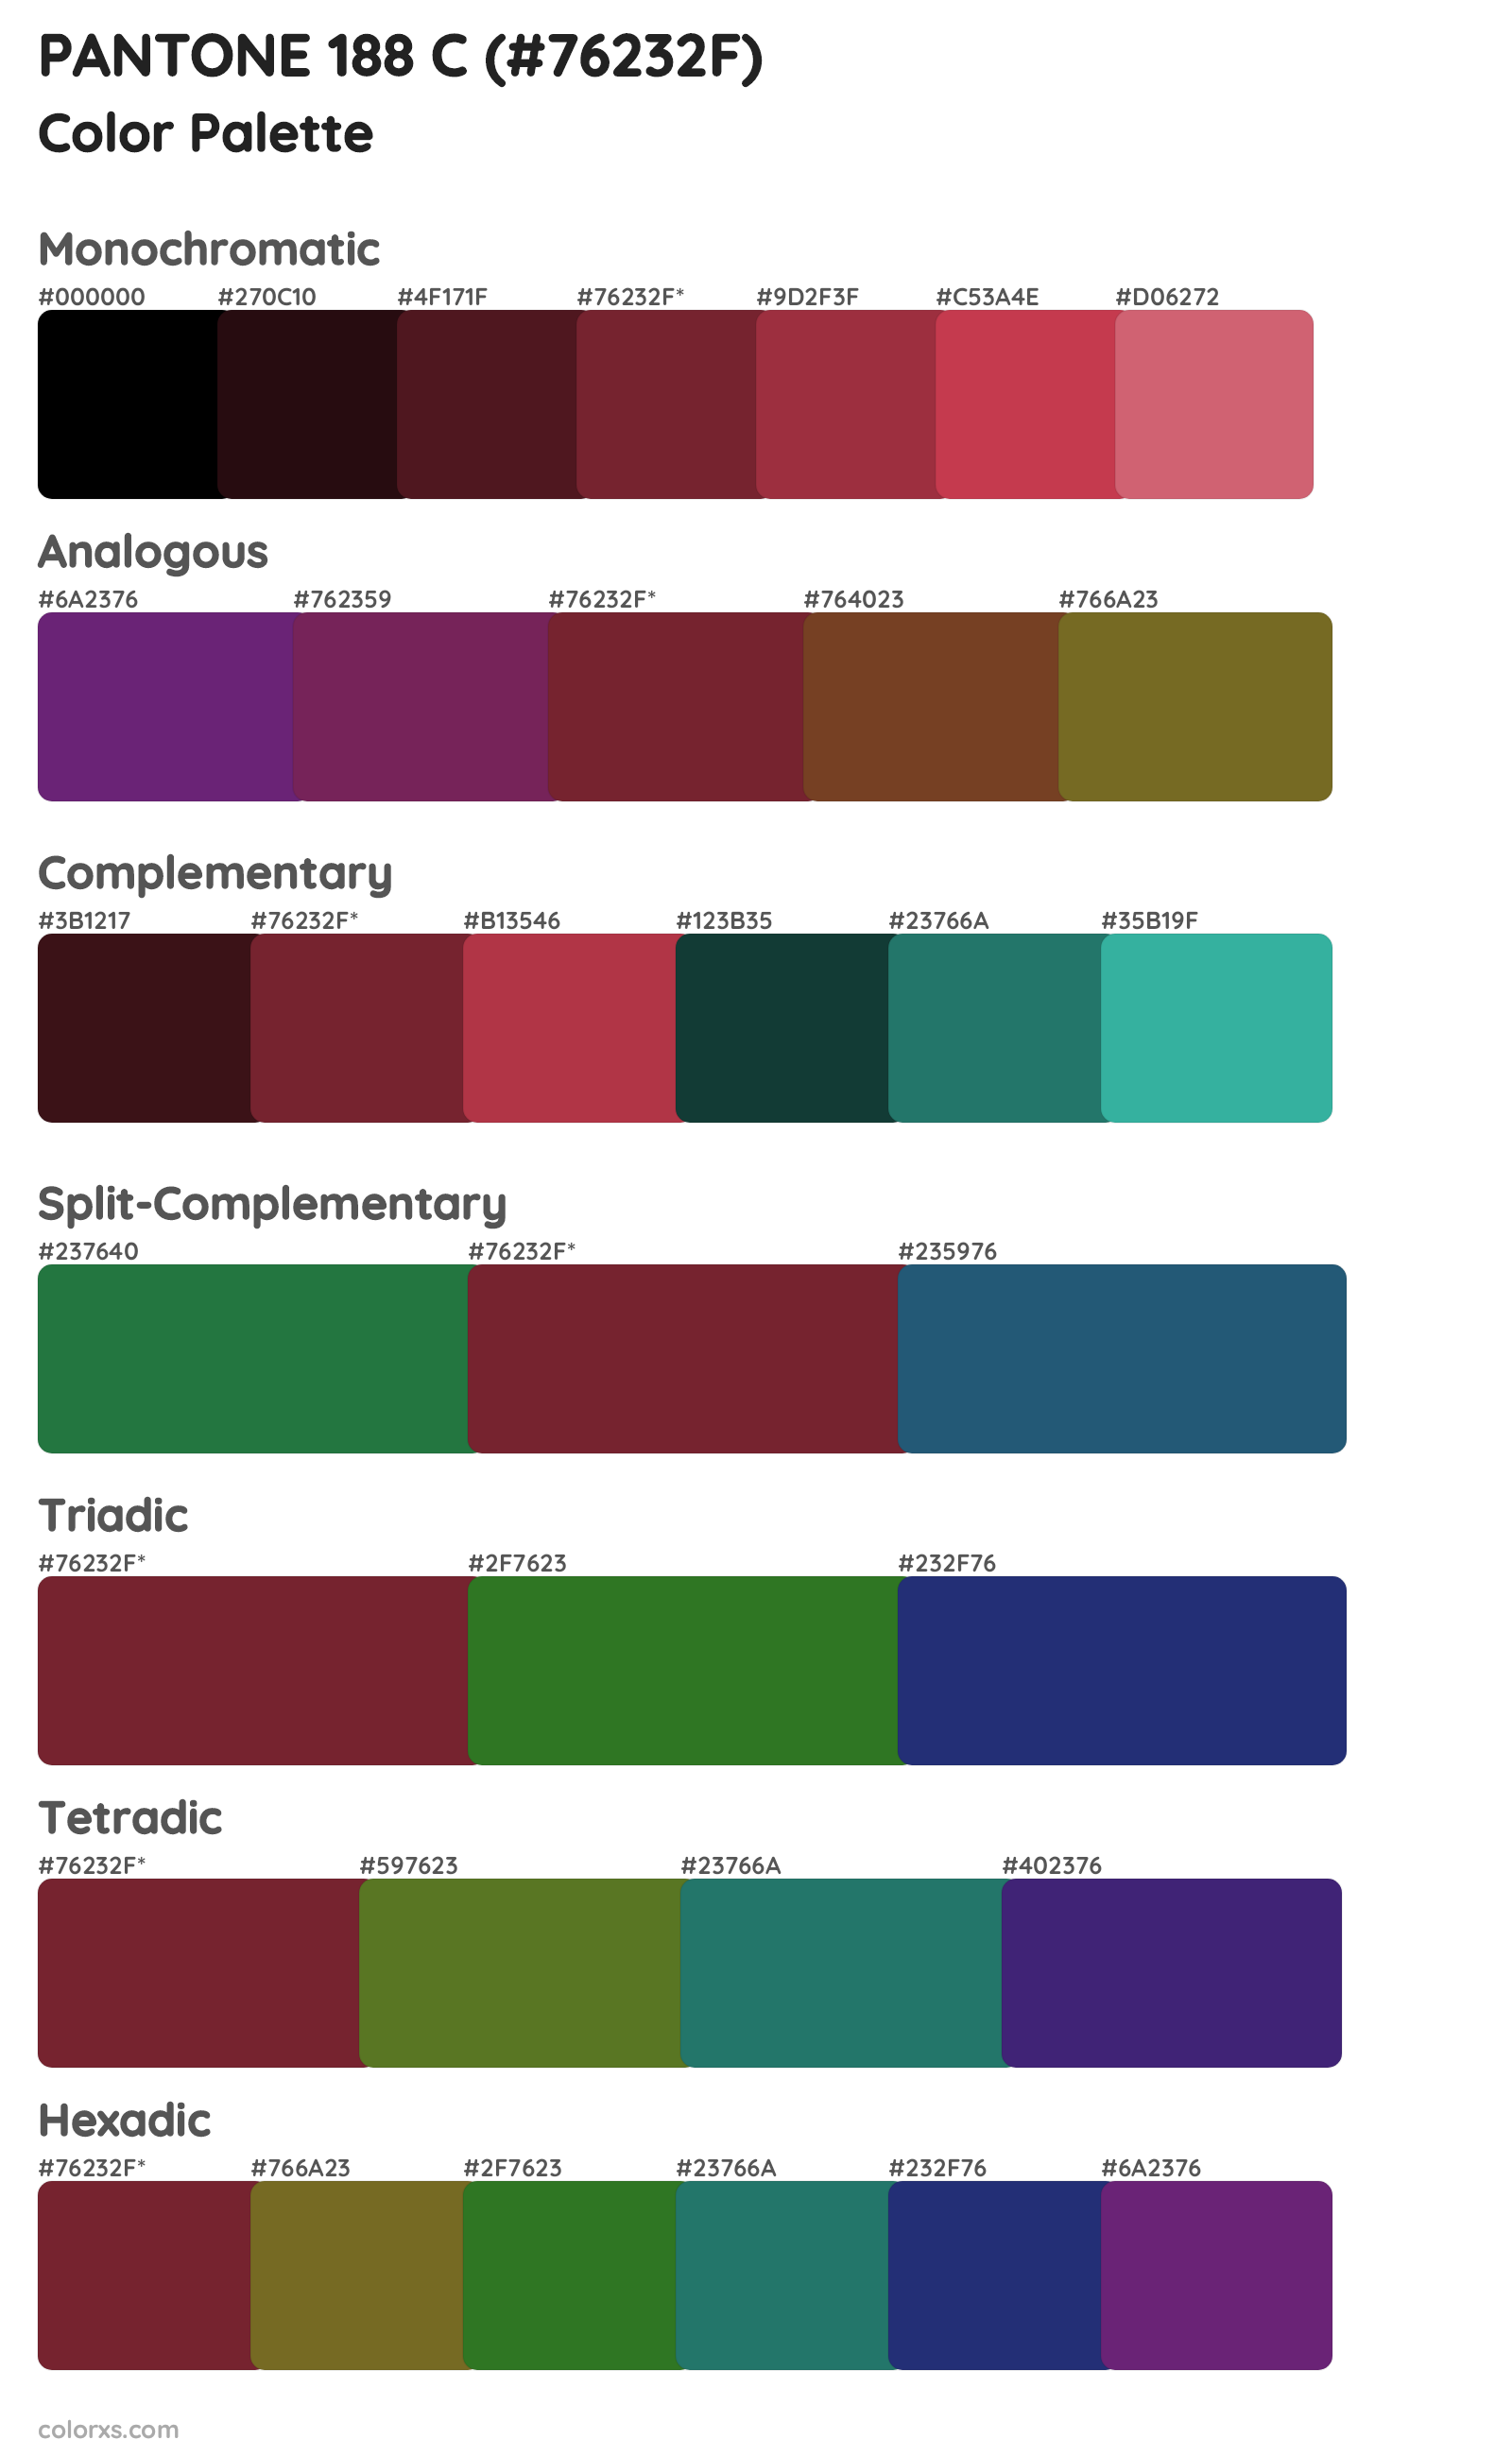 PANTONE 188 C Color Scheme Palettes